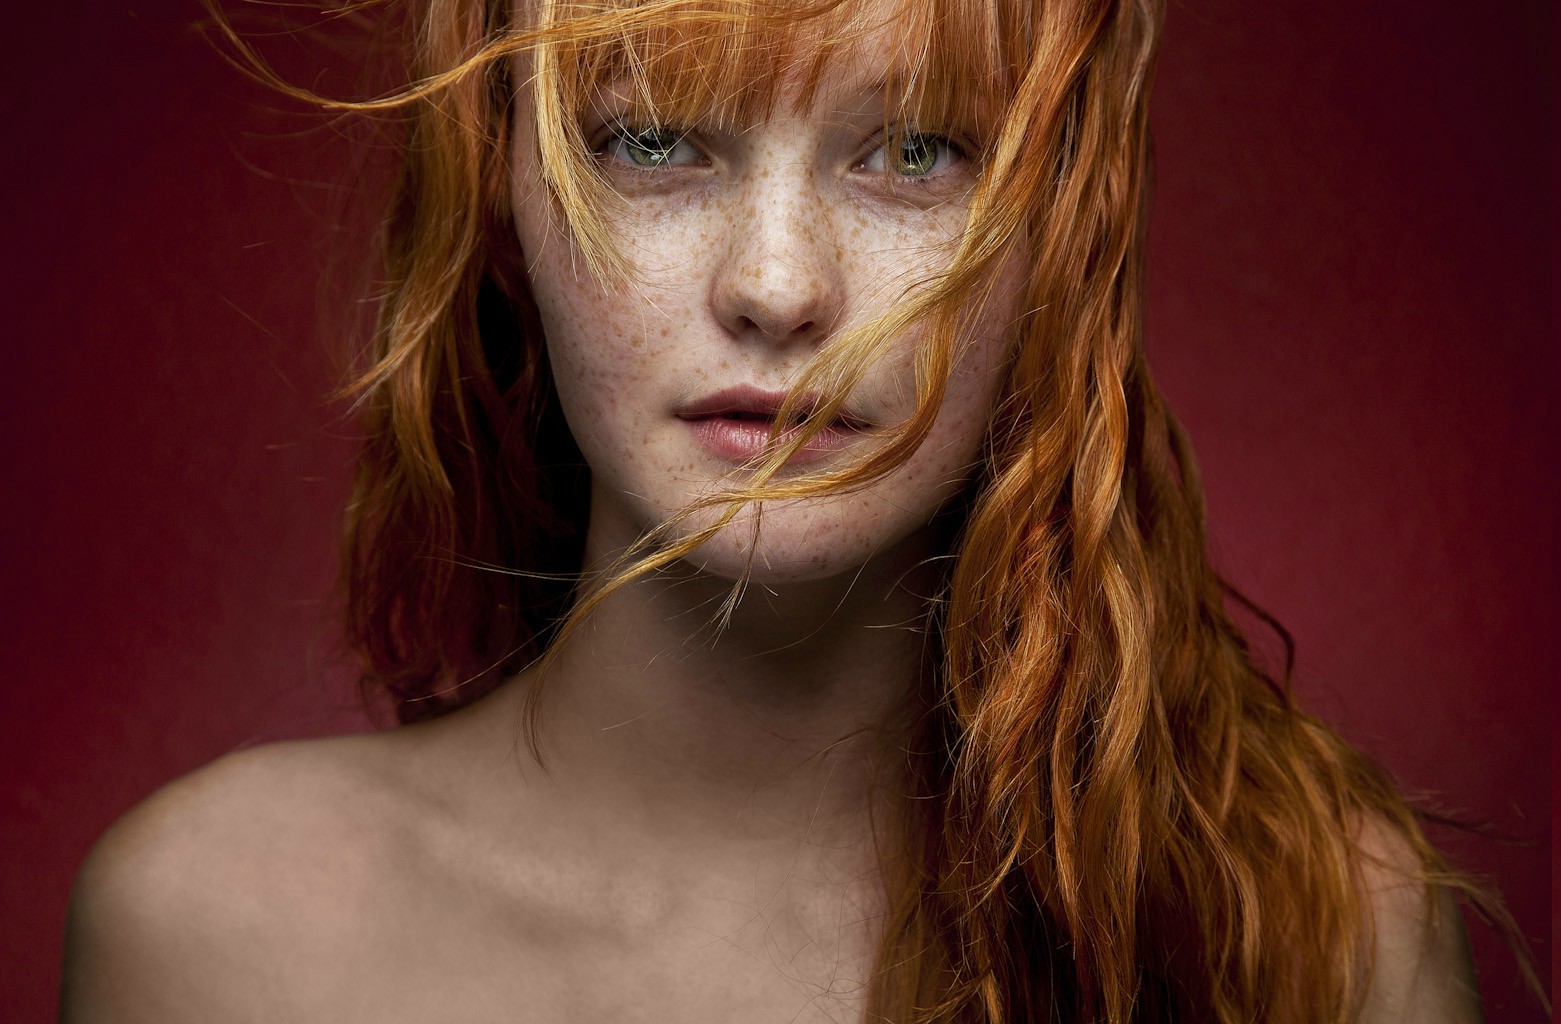 women, Redhead, Freckles, Green Eyes, Hair In Face, Portrait, Kacy Anne Hill Wallpaper